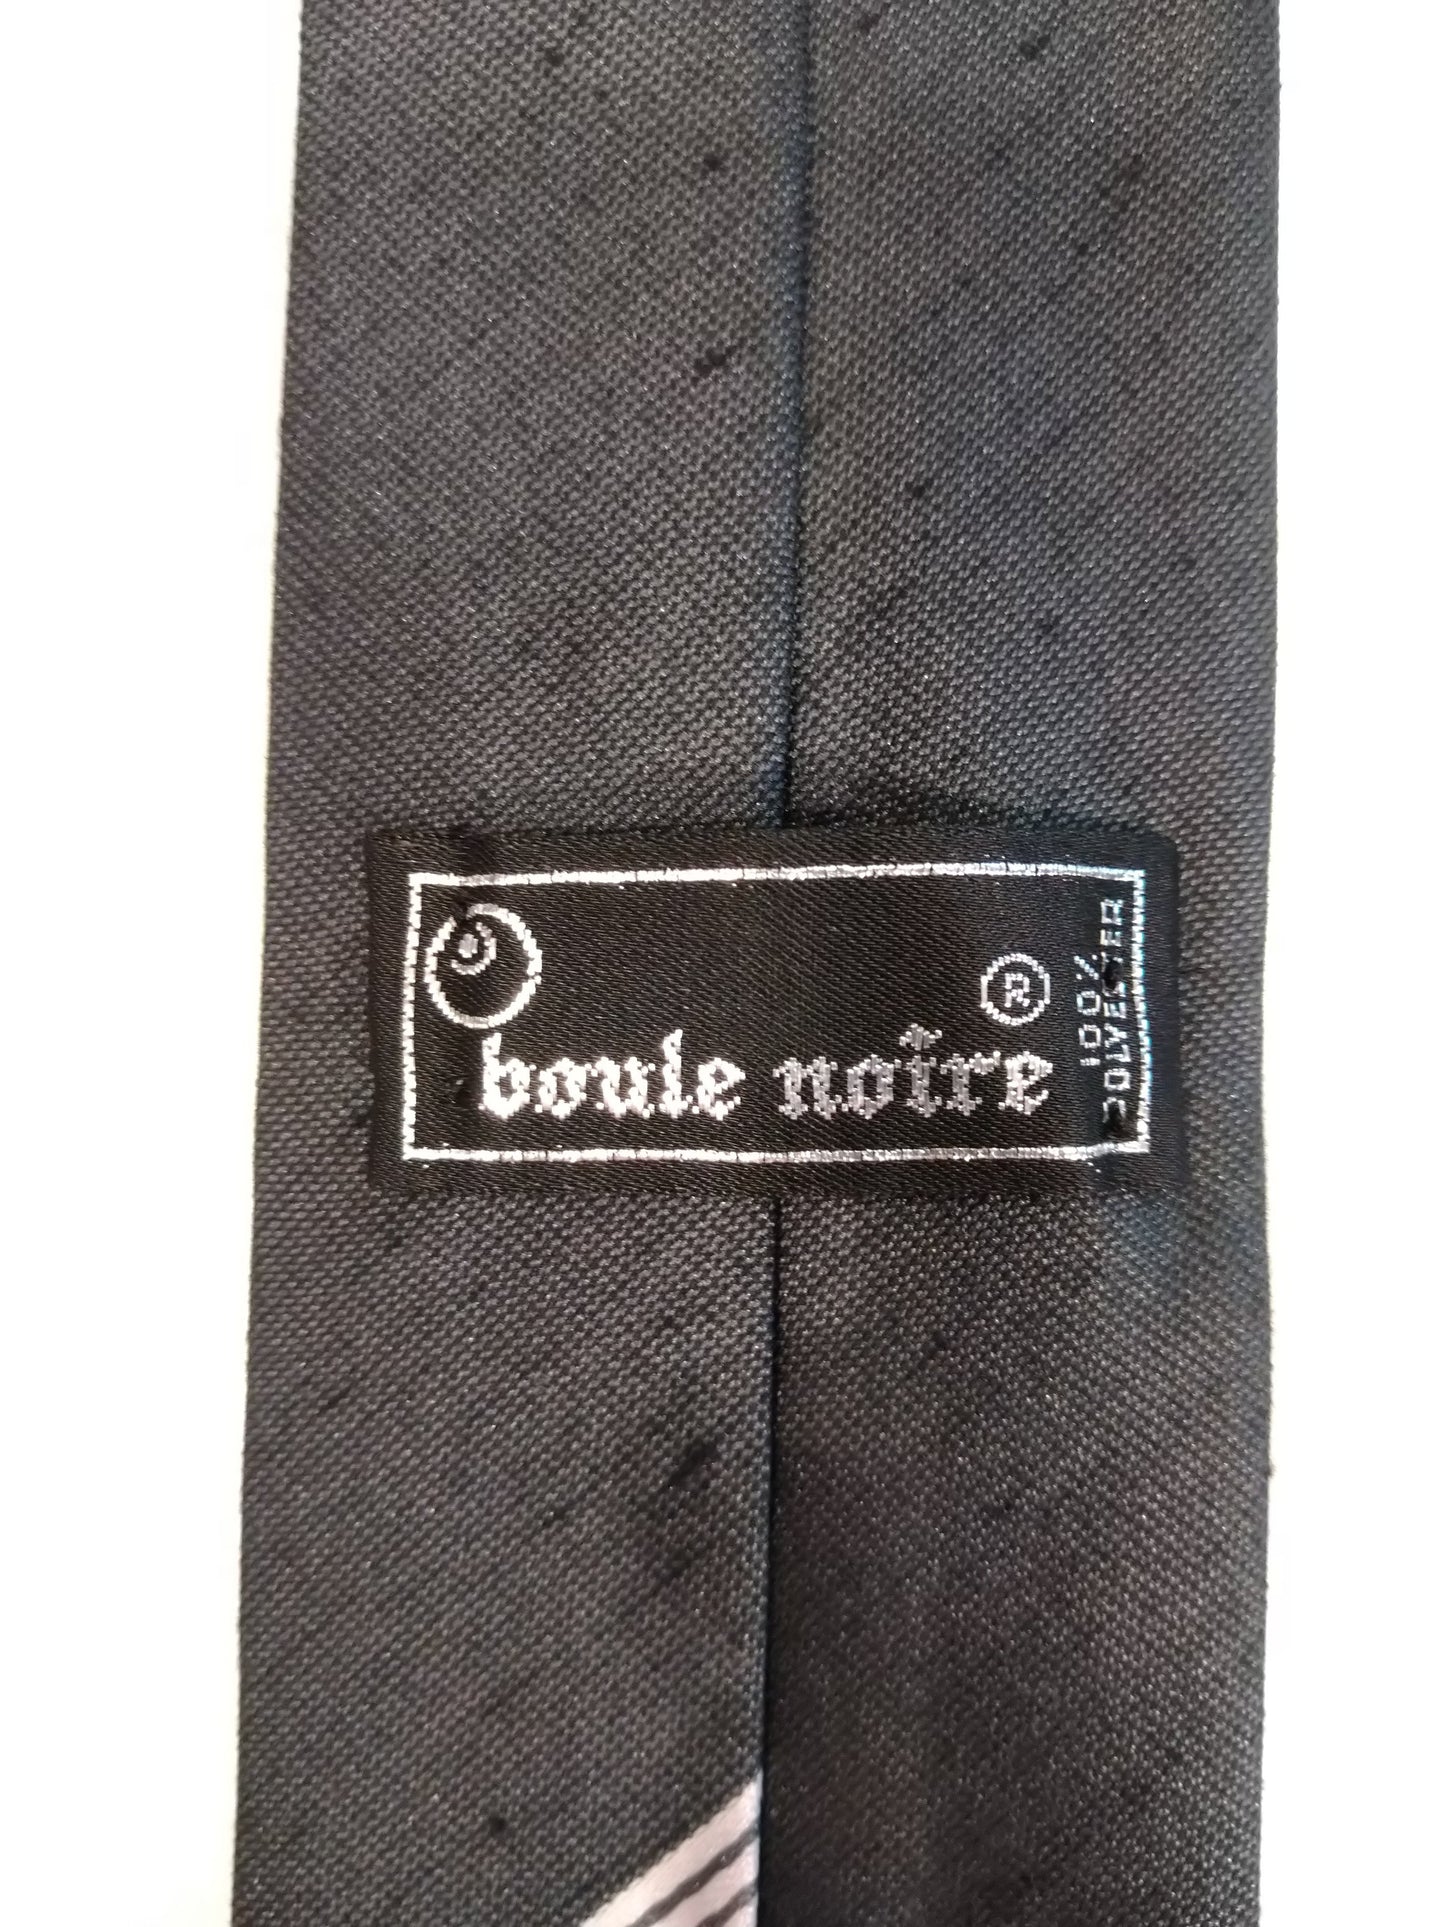 Cravatta in poliestere stretta vintage di boule noire. Motivo a strisce d'argento nero.